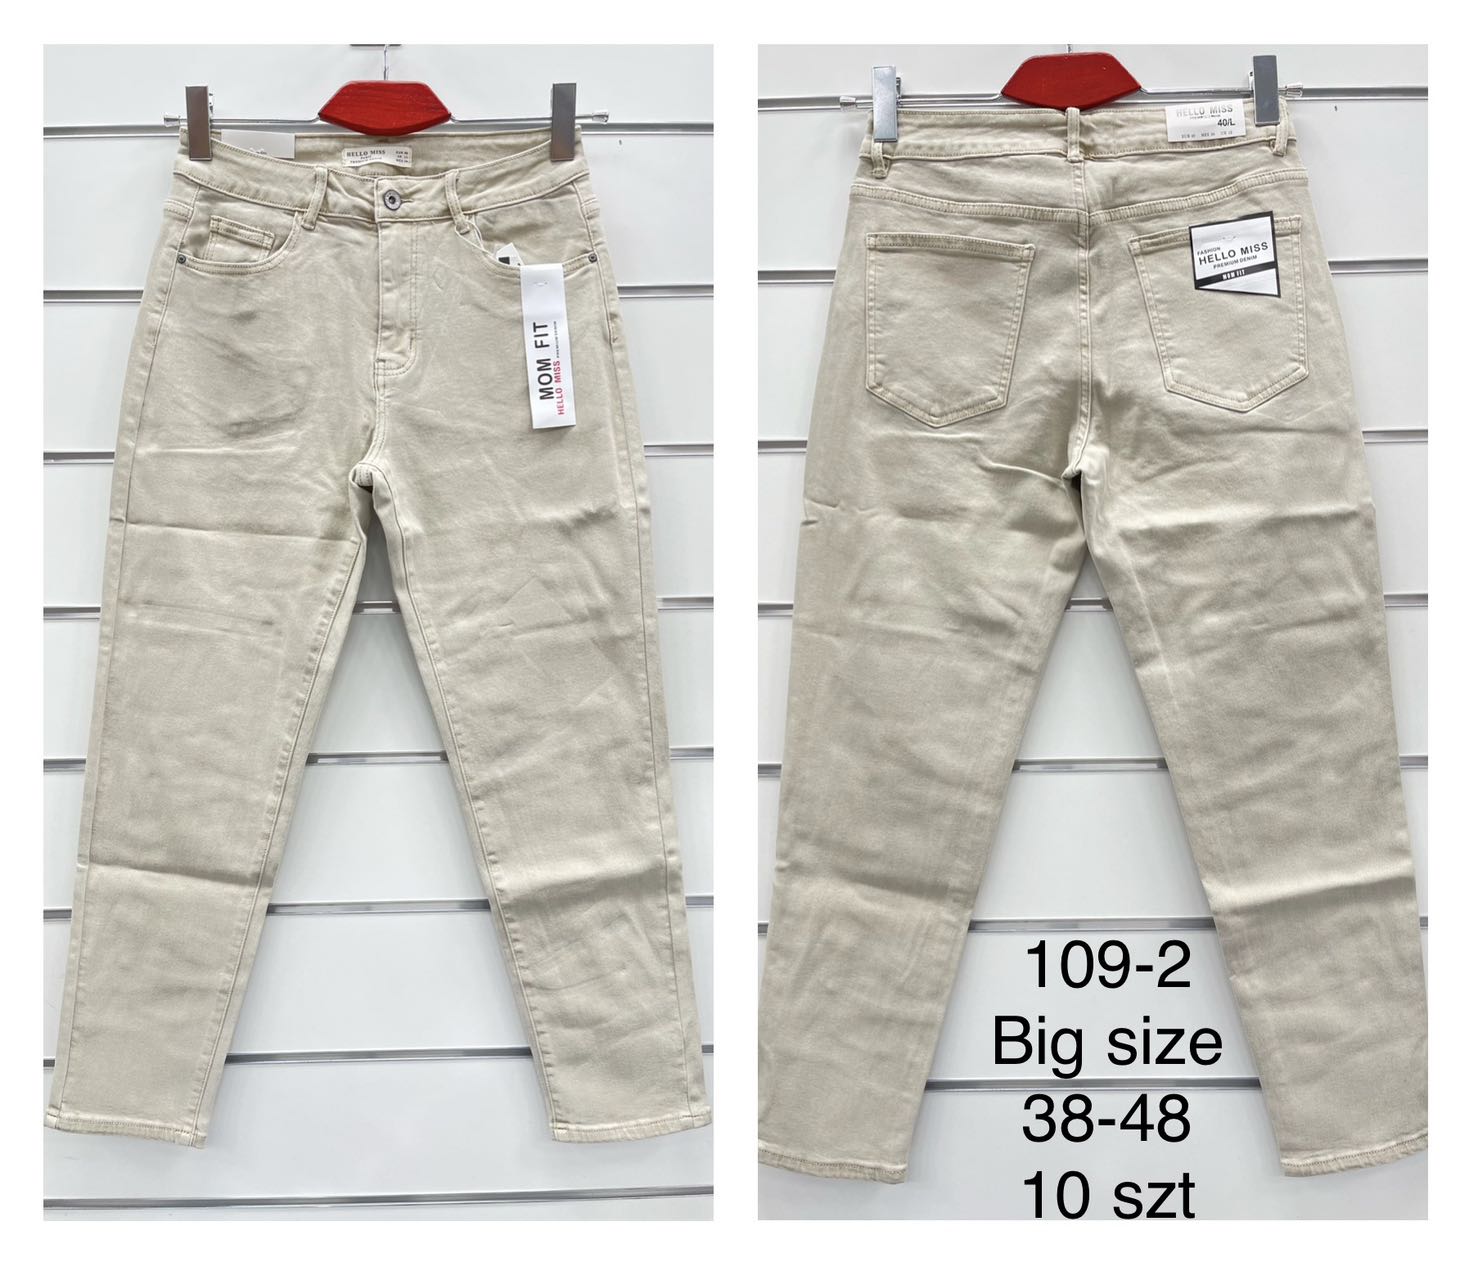 Spodnie damskie jeans duże  Roz 38-48.  Paczka 10szt